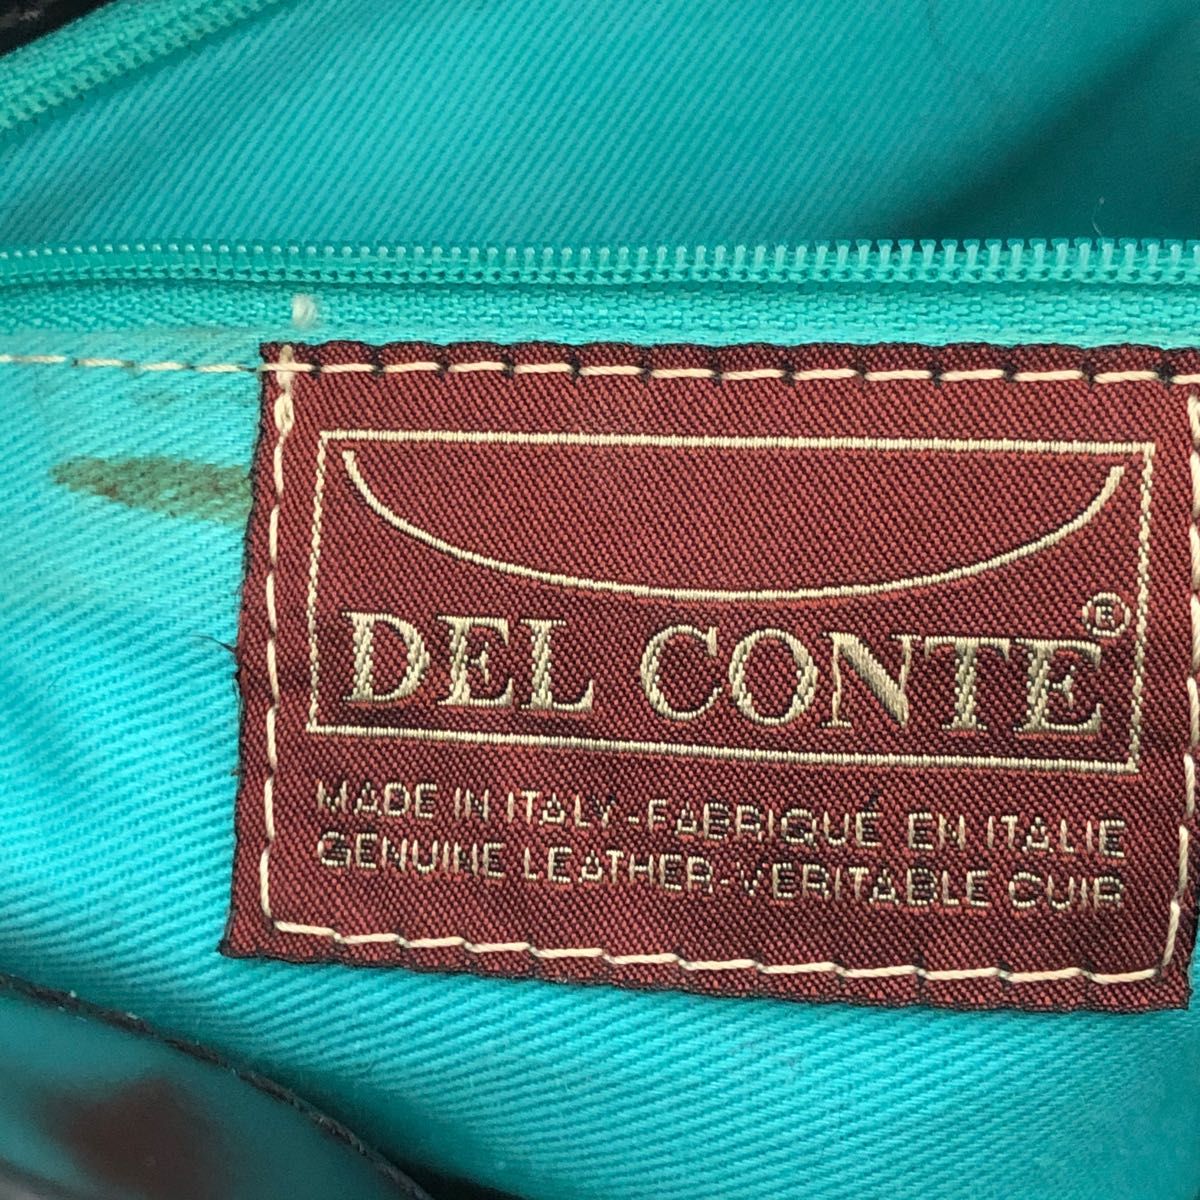 DEL CONTE (デルコンテ)ハラコショルダーバッグ